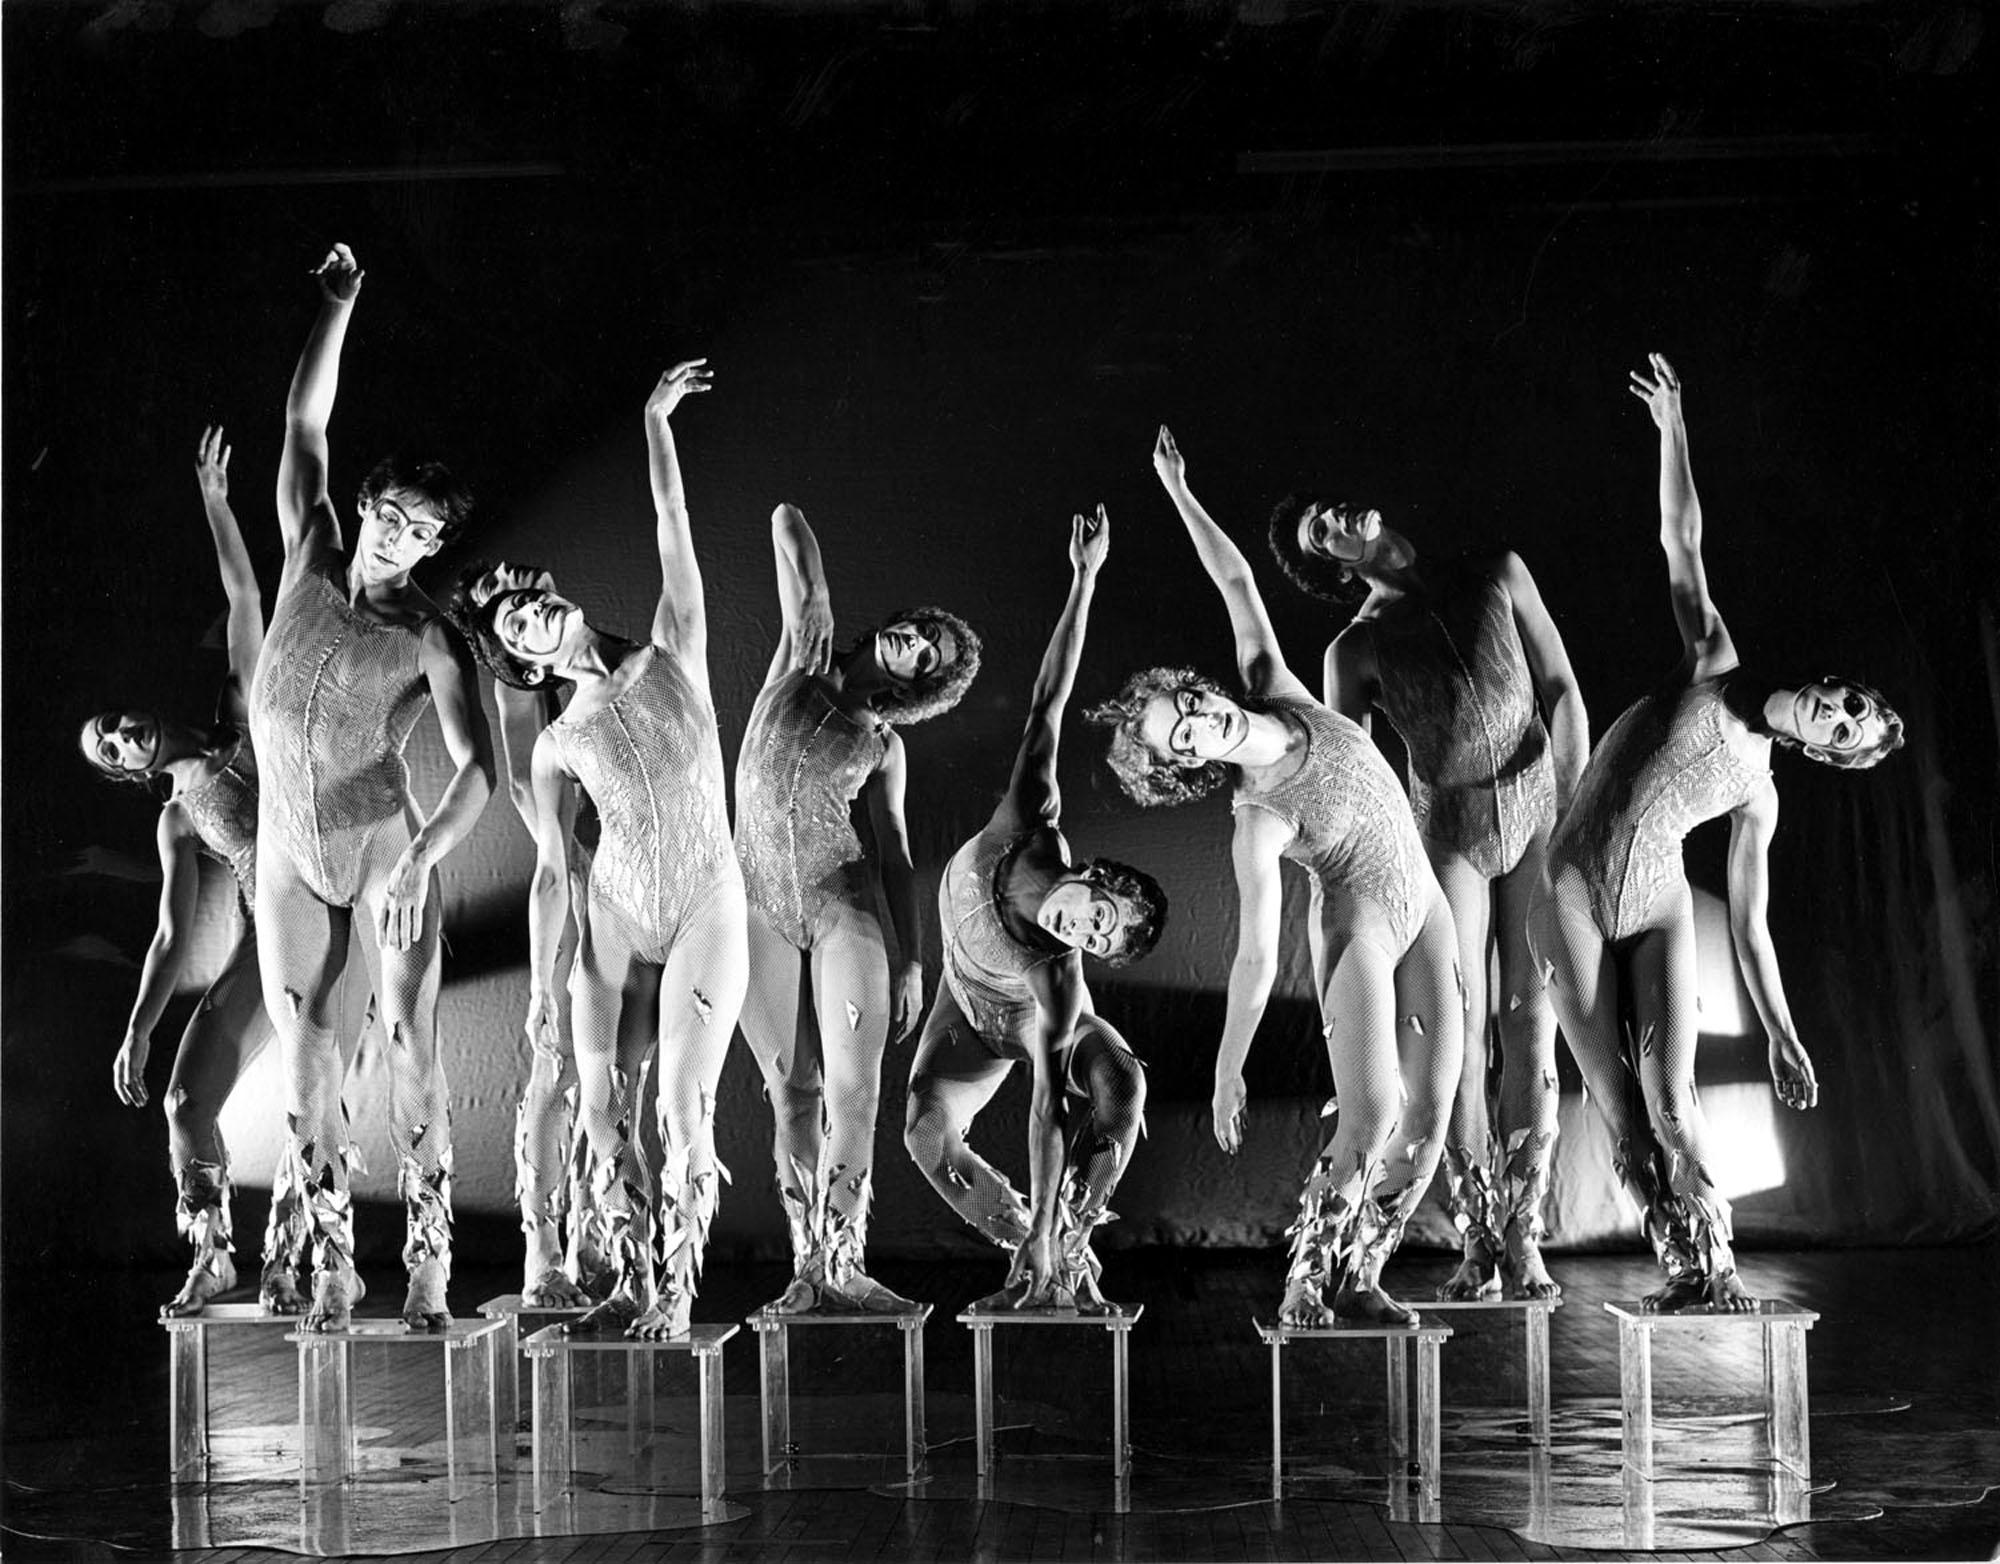 Jack Mitchell Black and White Photograph – Moderne Tänzergruppe „Modern Dance Company Performing“ von Alwin Nikolais